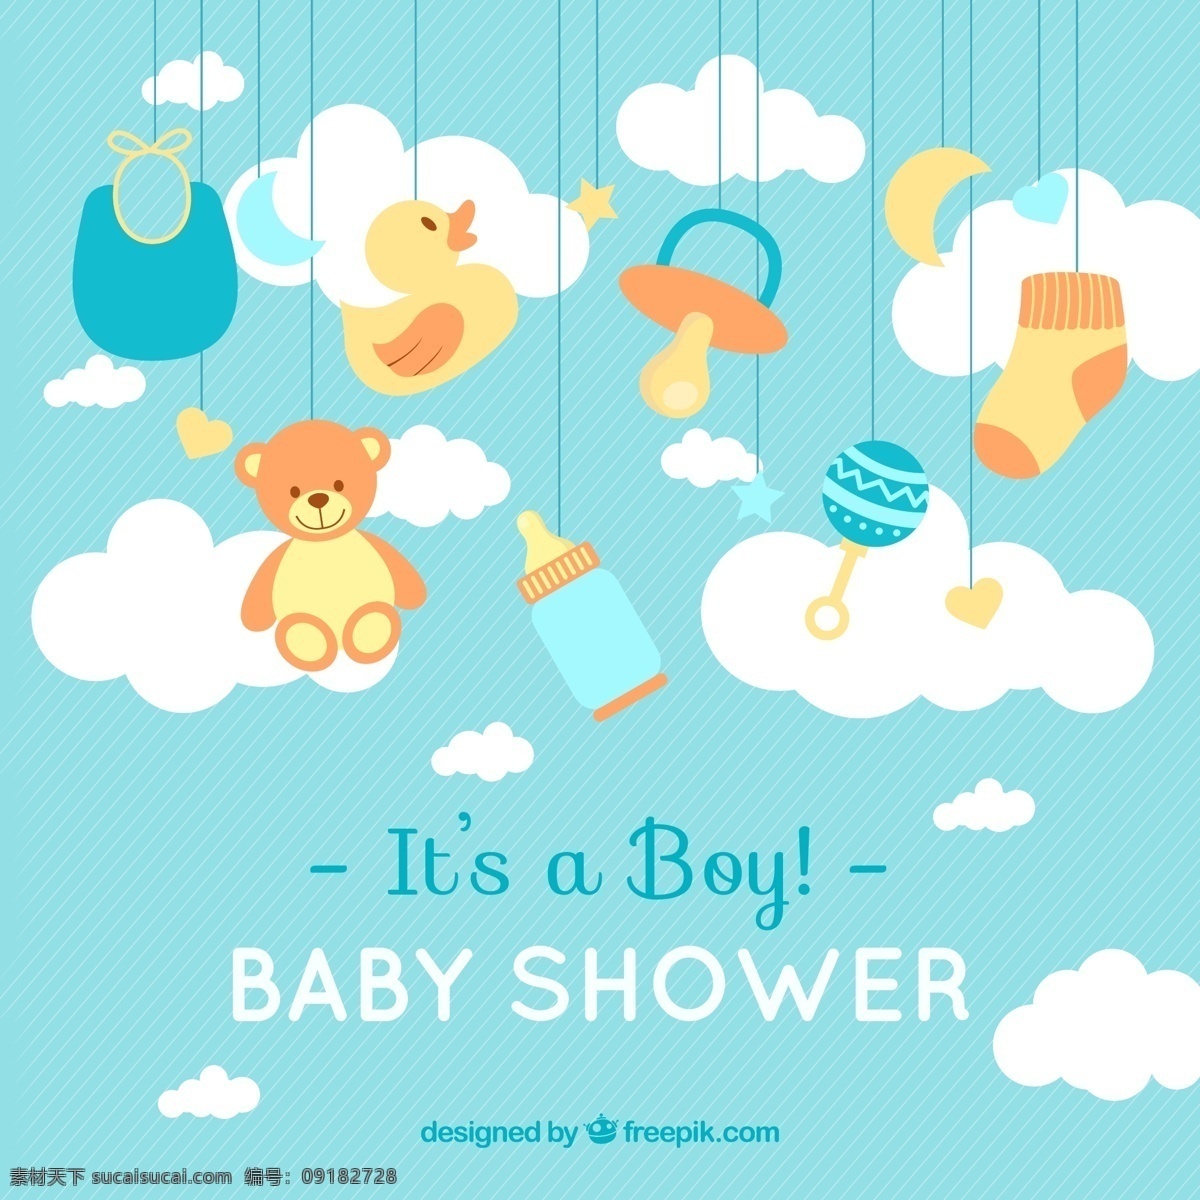 母婴用品 婴儿 奶瓶 小黄鸭 云朵 卡通素材 广告 母婴类